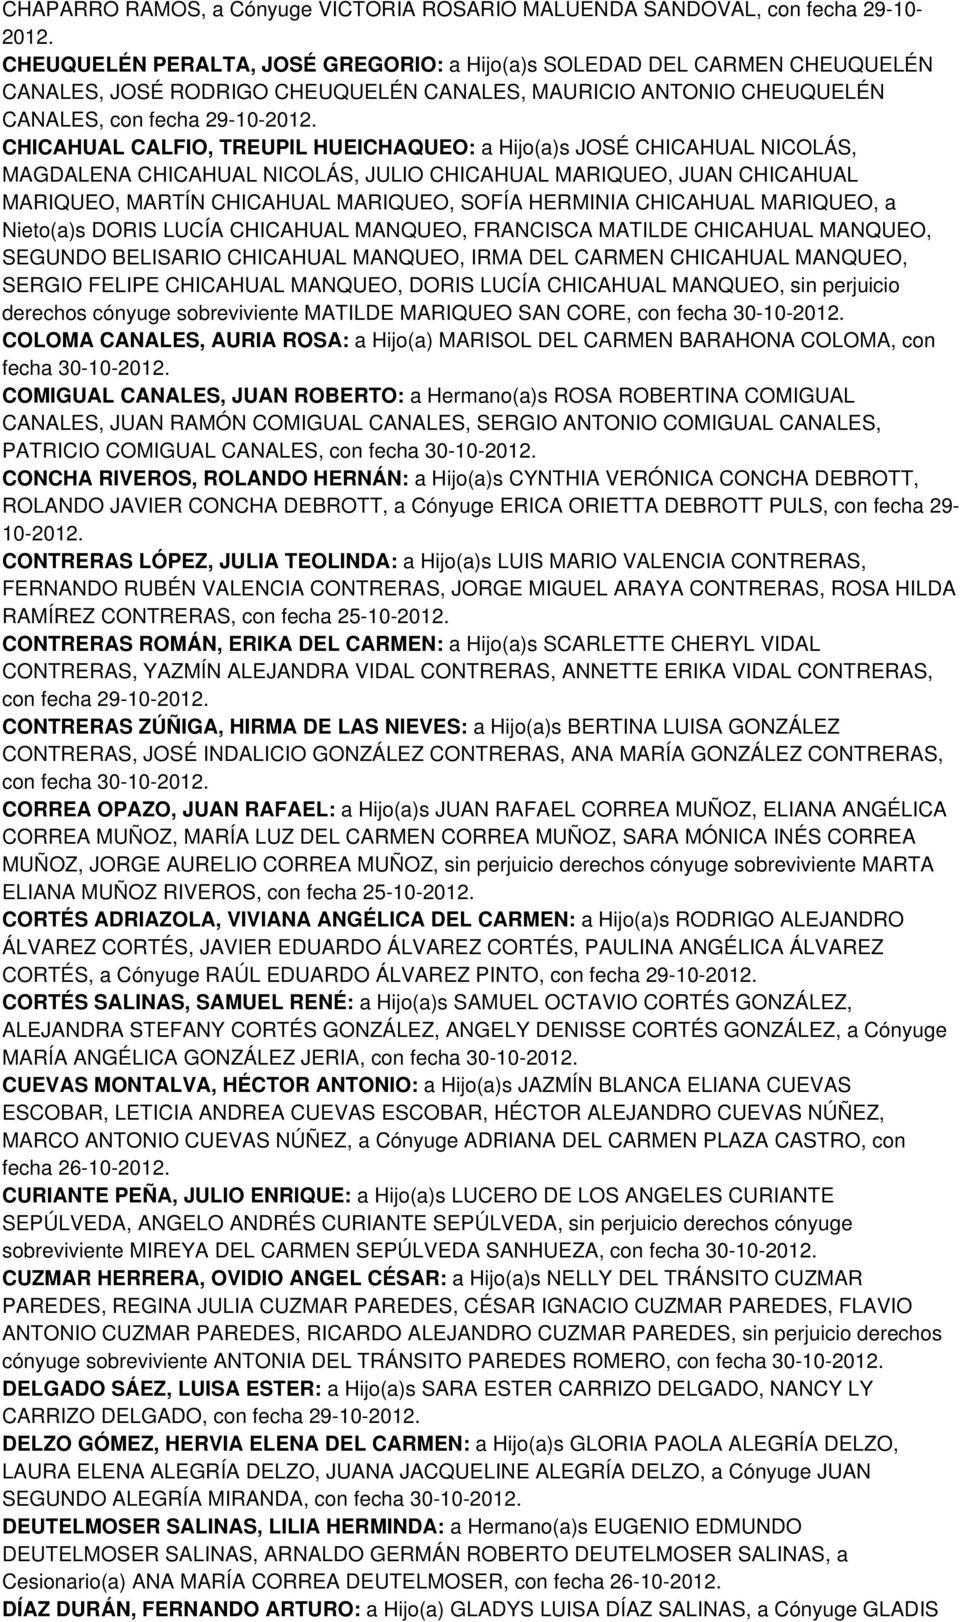 MARIQUEO, MARTÍN CHICAHUAL MARIQUEO, SOFÍA HERMINIA CHICAHUAL MARIQUEO, a Nieto(a)s DORIS LUCÍA CHICAHUAL MANQUEO, FRANCISCA MATILDE CHICAHUAL MANQUEO, SEGUNDO BELISARIO CHICAHUAL MANQUEO, IRMA DEL